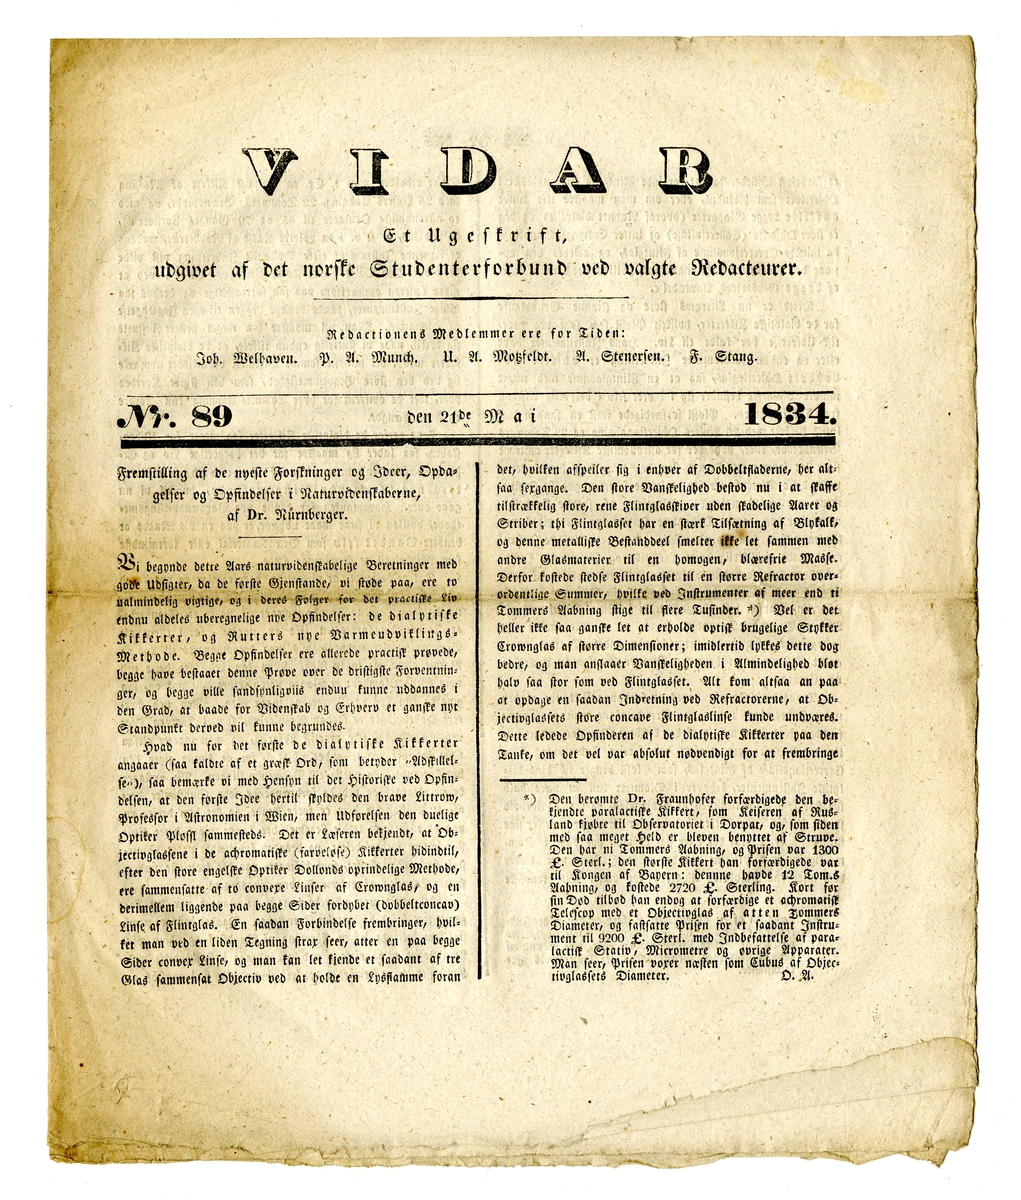 12 eksemplarer av studenttidsskriftet Vidar fra oktober 1833 til juli 1834. Alle består av et dobbeltfalset ark (8 sider) trykt med fraktur.